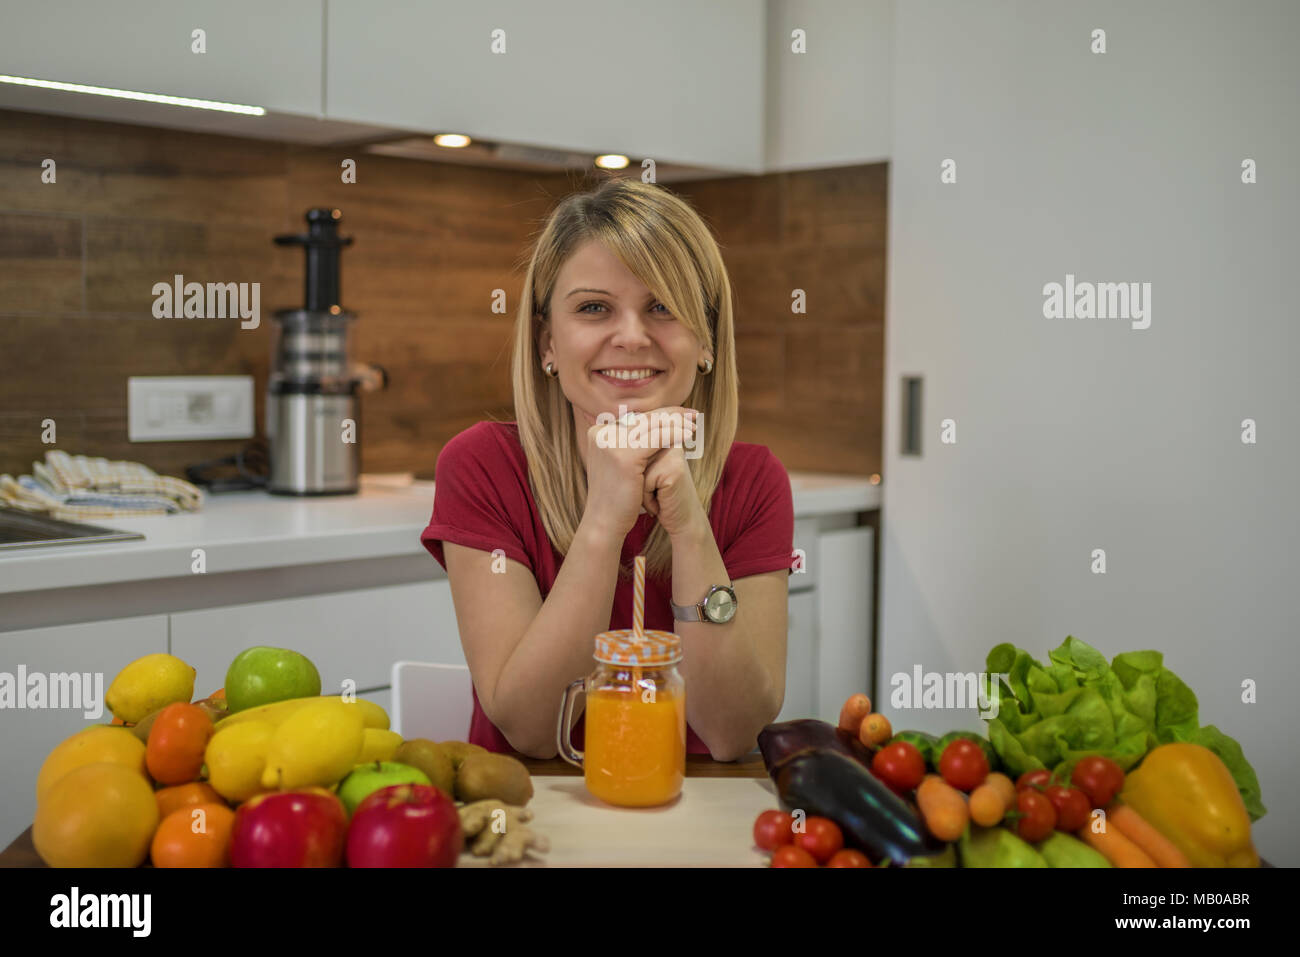 Giovane donna frullato potabile in cucina. Close up ritratto di giovane donna in cucina. Cibo sano - insalata di verdure. La dieta. Concetto di dieta. Foto Stock